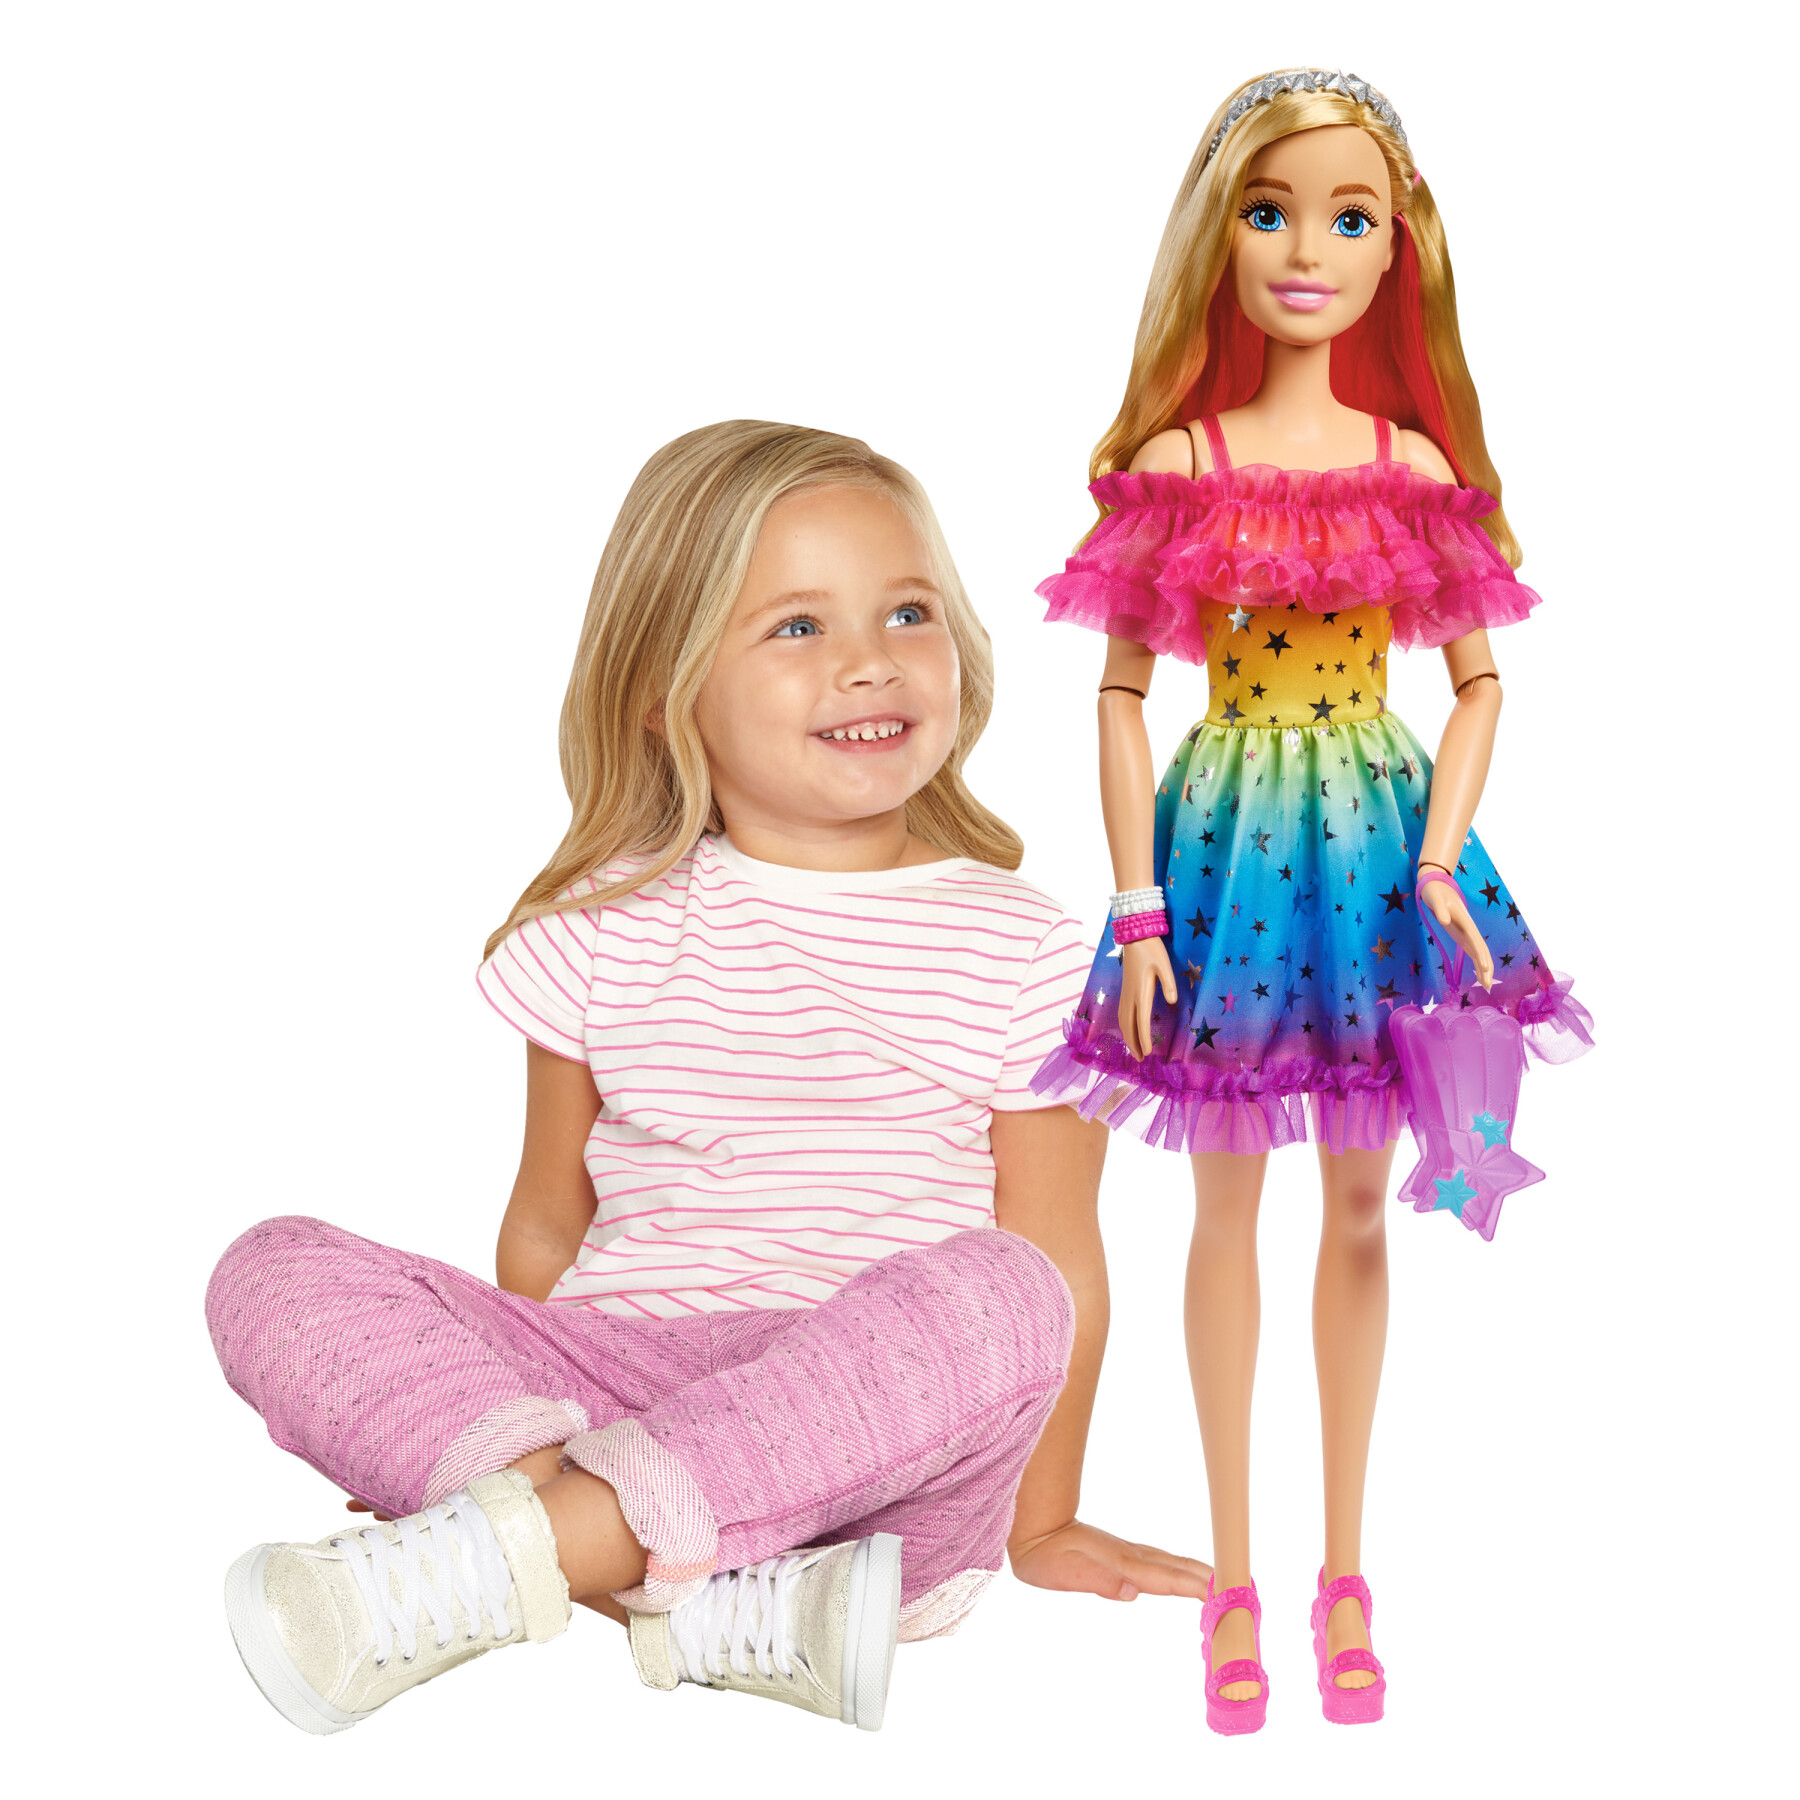 Bambola barbie alta 71 cm con abito arcobaleno e accessori moda - Barbie